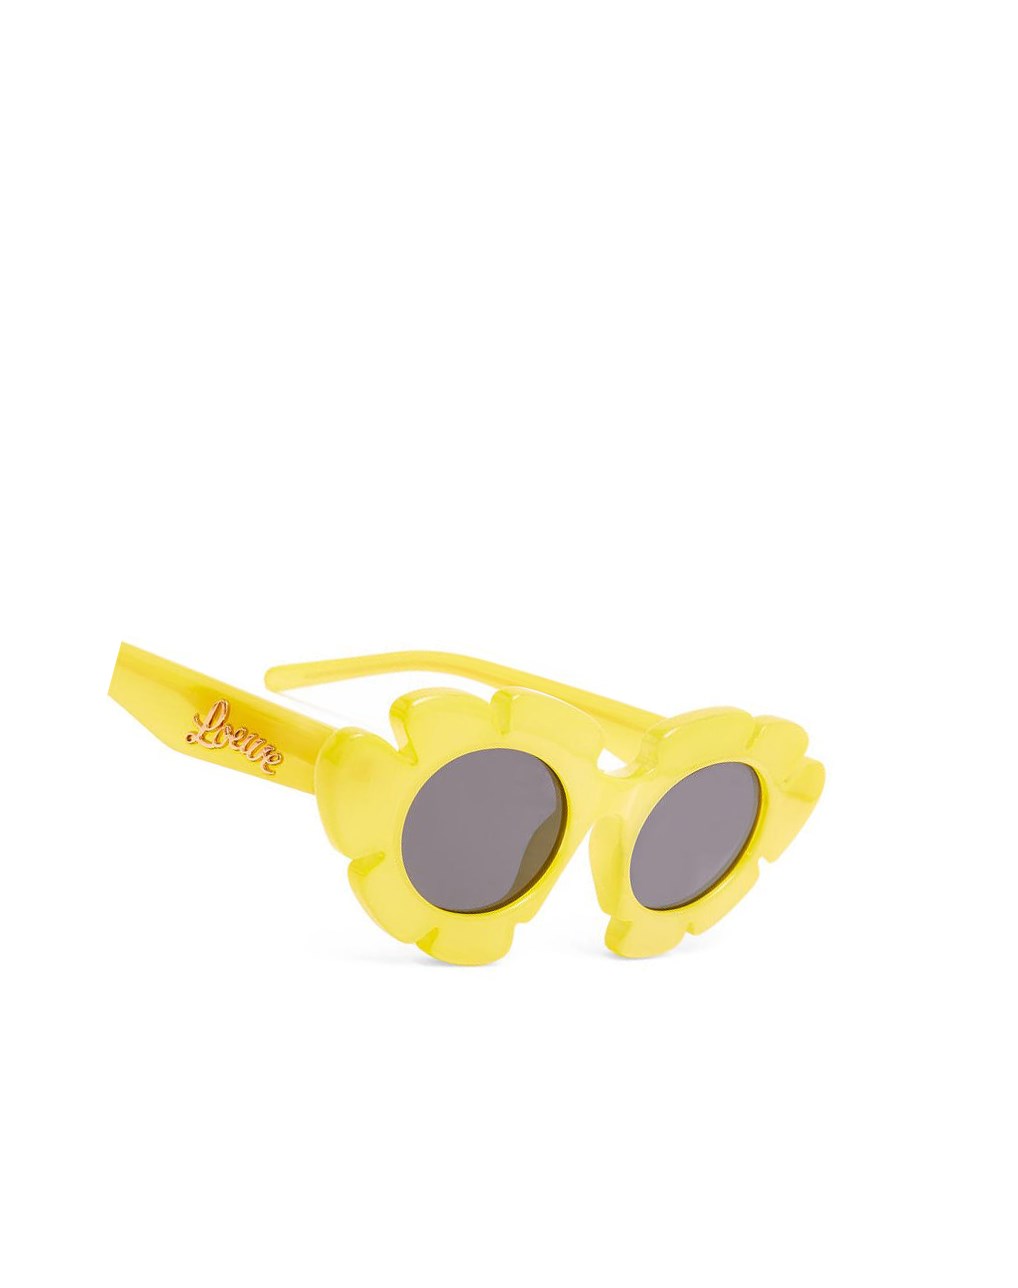 Loewe Flower sunglasses in injected nylon Jaune | 5843QTYFZ